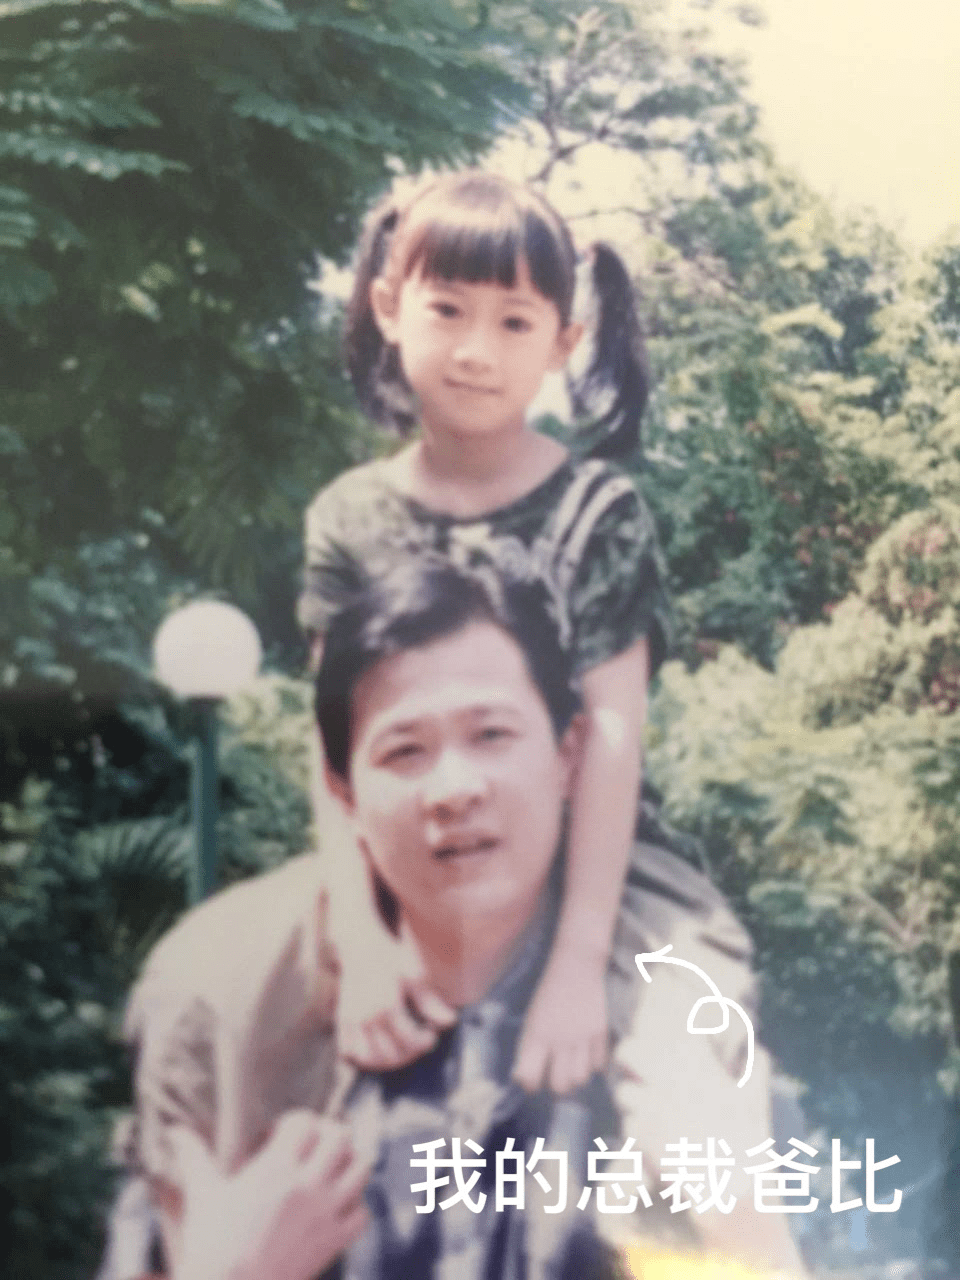 丁佳敏曾分享童年与父亲的照片，小时候也是一个美女。